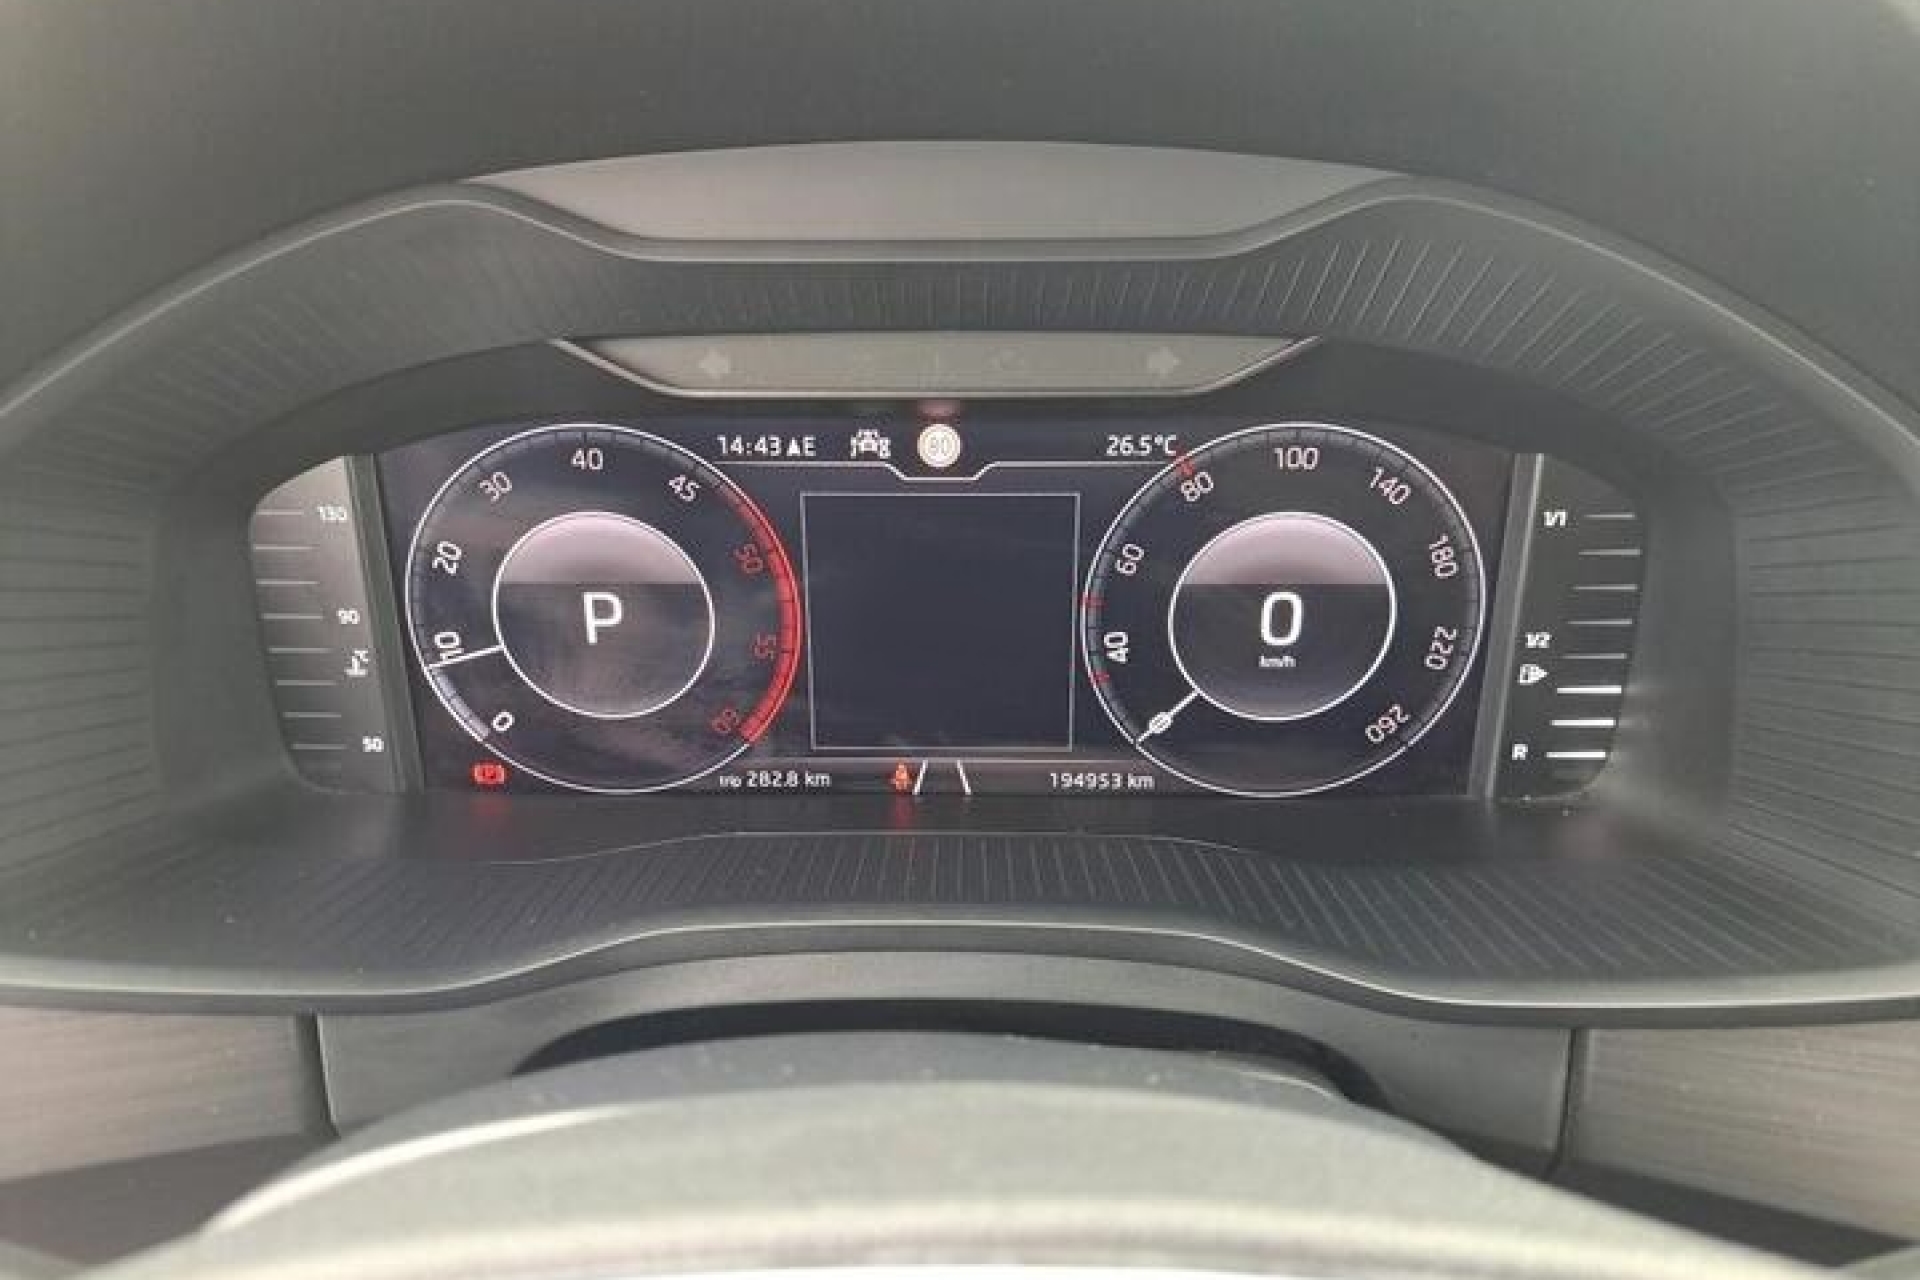 Škoda Kodiaq 2.0 TDI DSG7 150KS 7-Sjedišta AMBITION FULL-LED VIRTUAL COCKPIT Navigacija 2xParktronic Kamera ACC-System Max-Voll FACELIFT